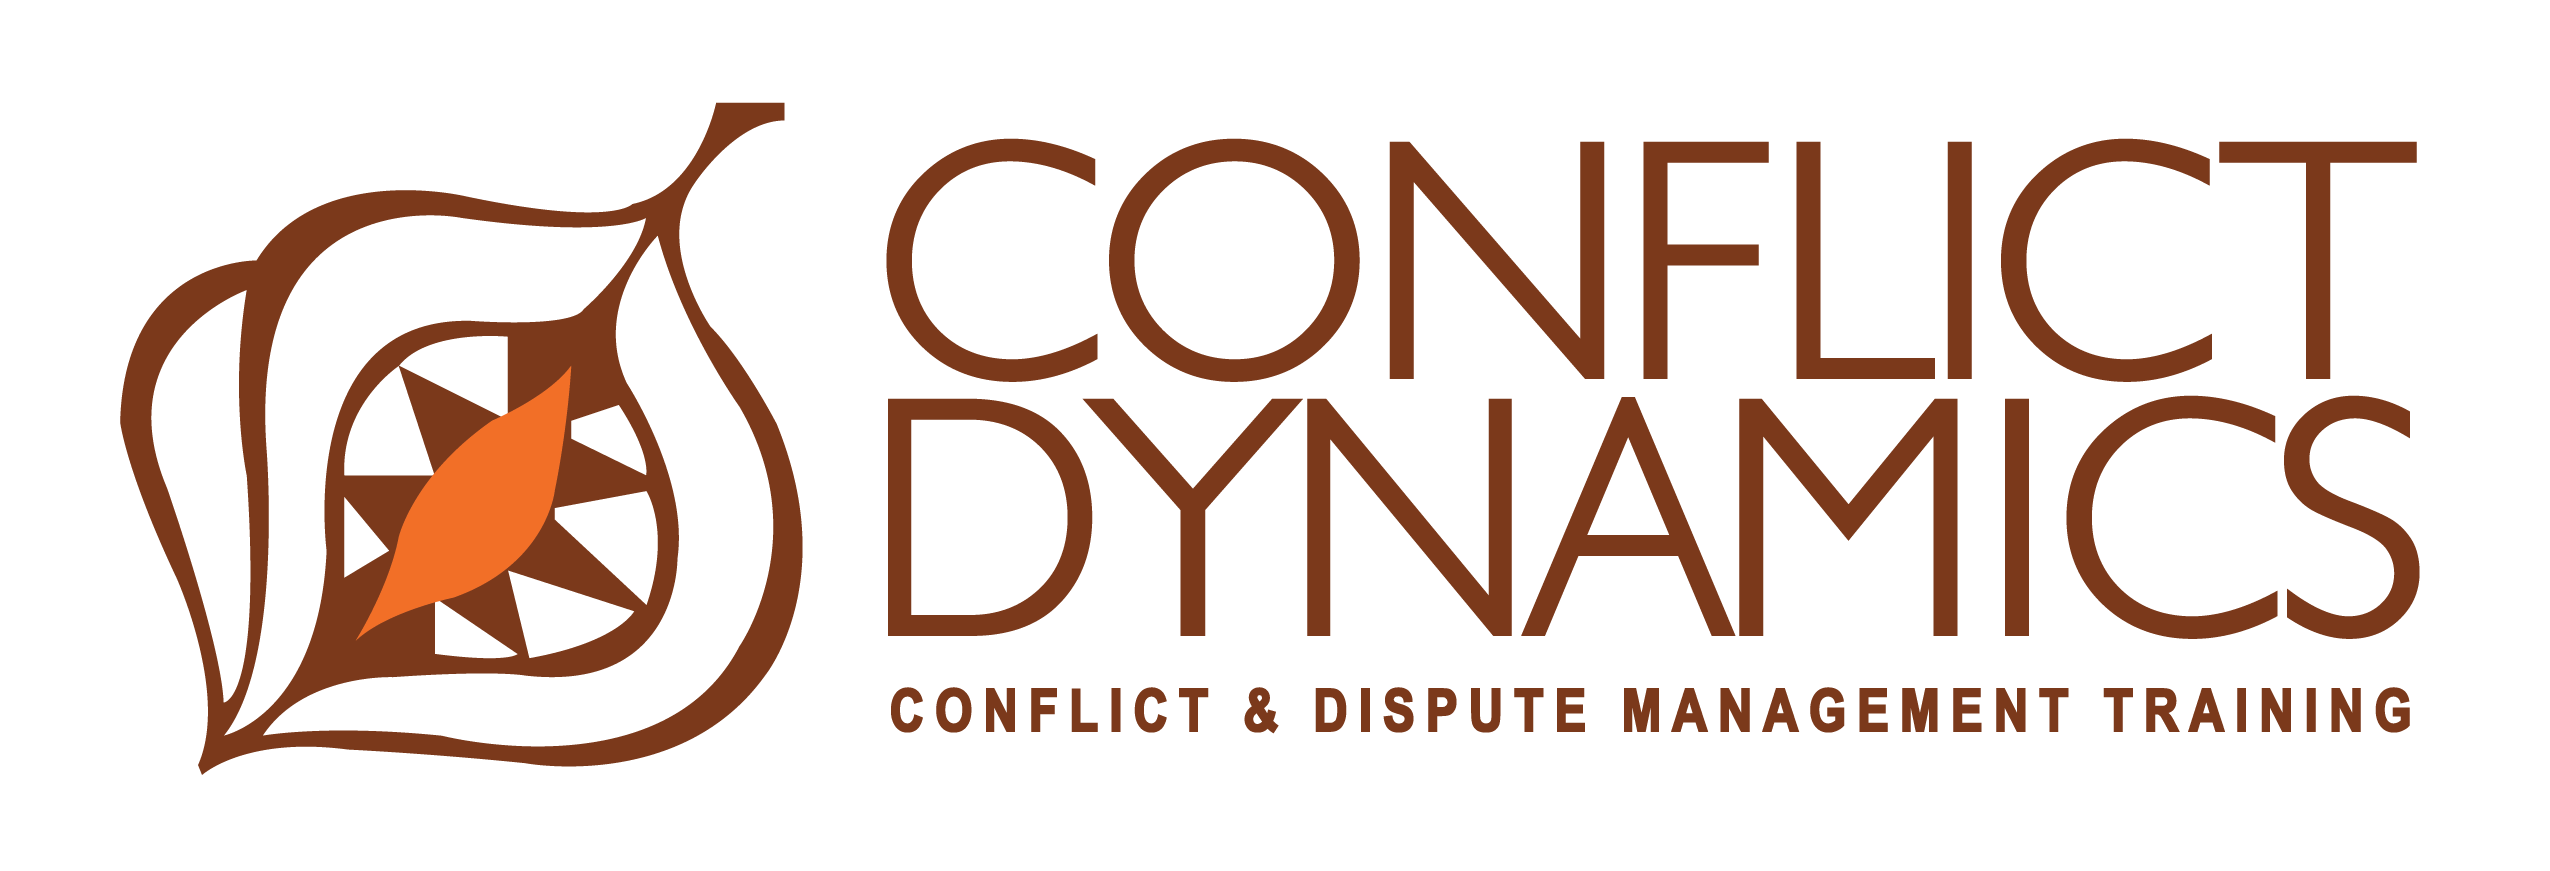 Conflict Dynamics cc logo